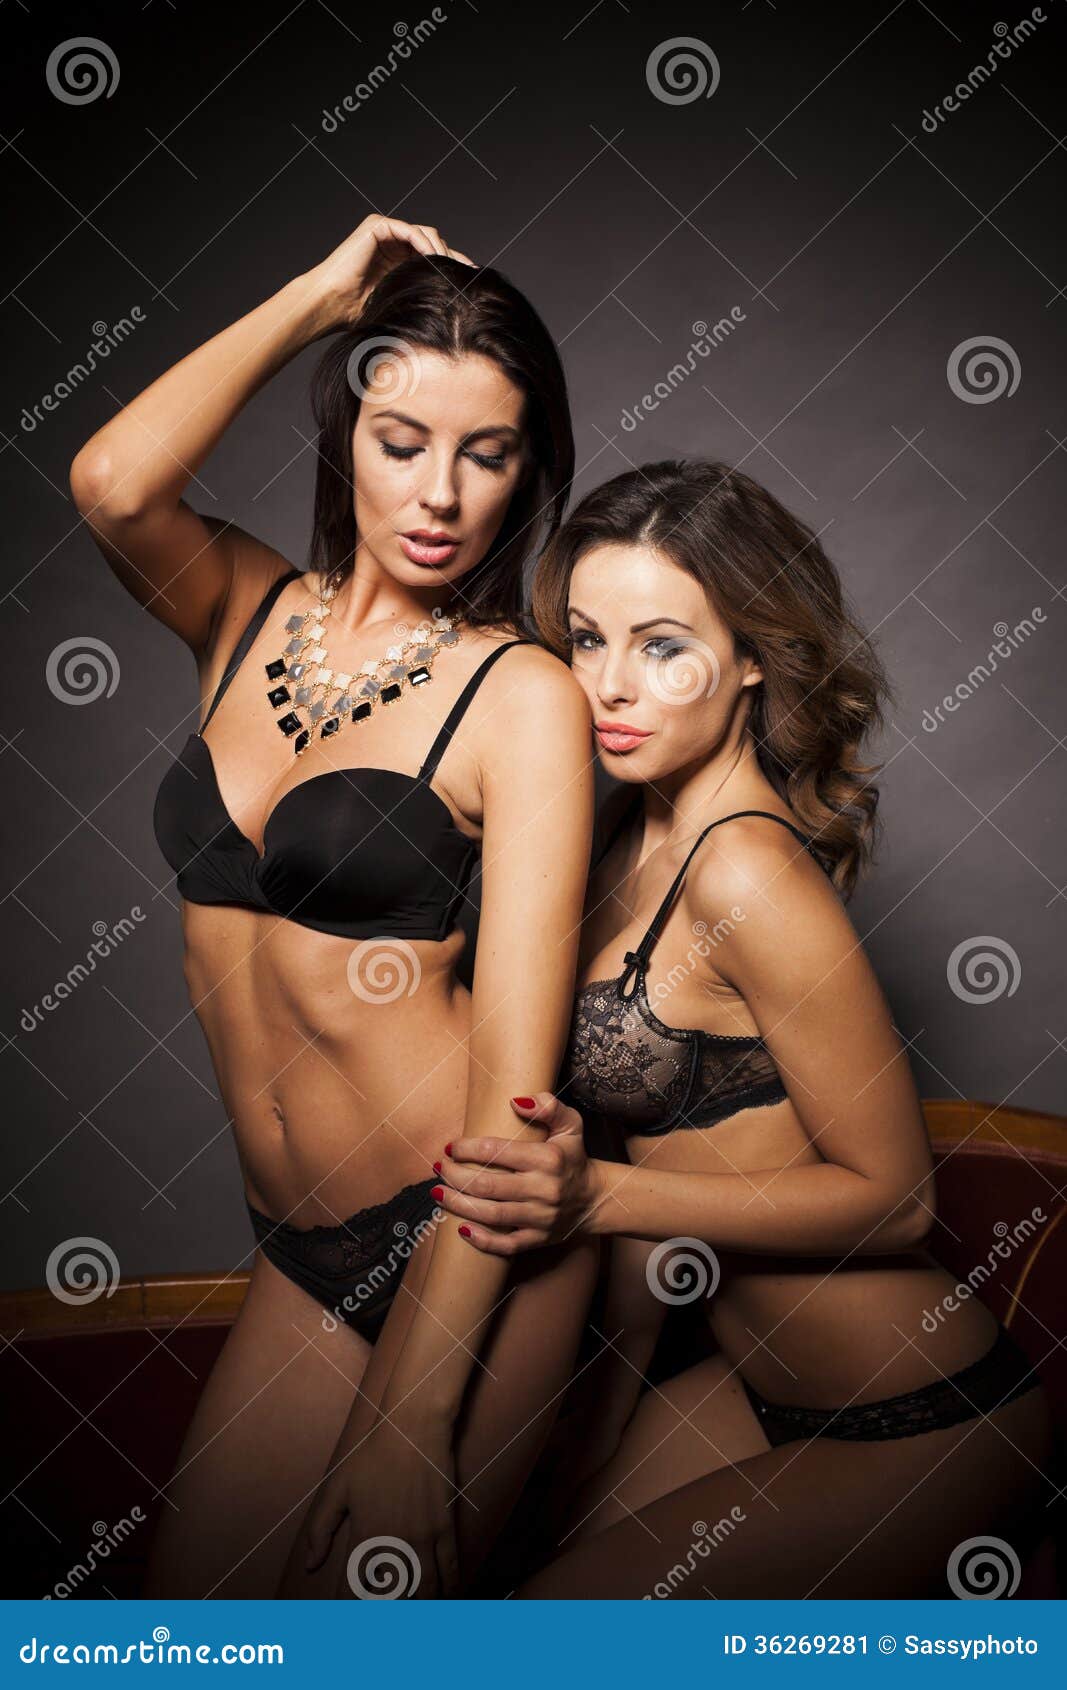 Two Lesbian Lingerie Women Hugging Stock Image - Image of friendship,  brunette: 36269281